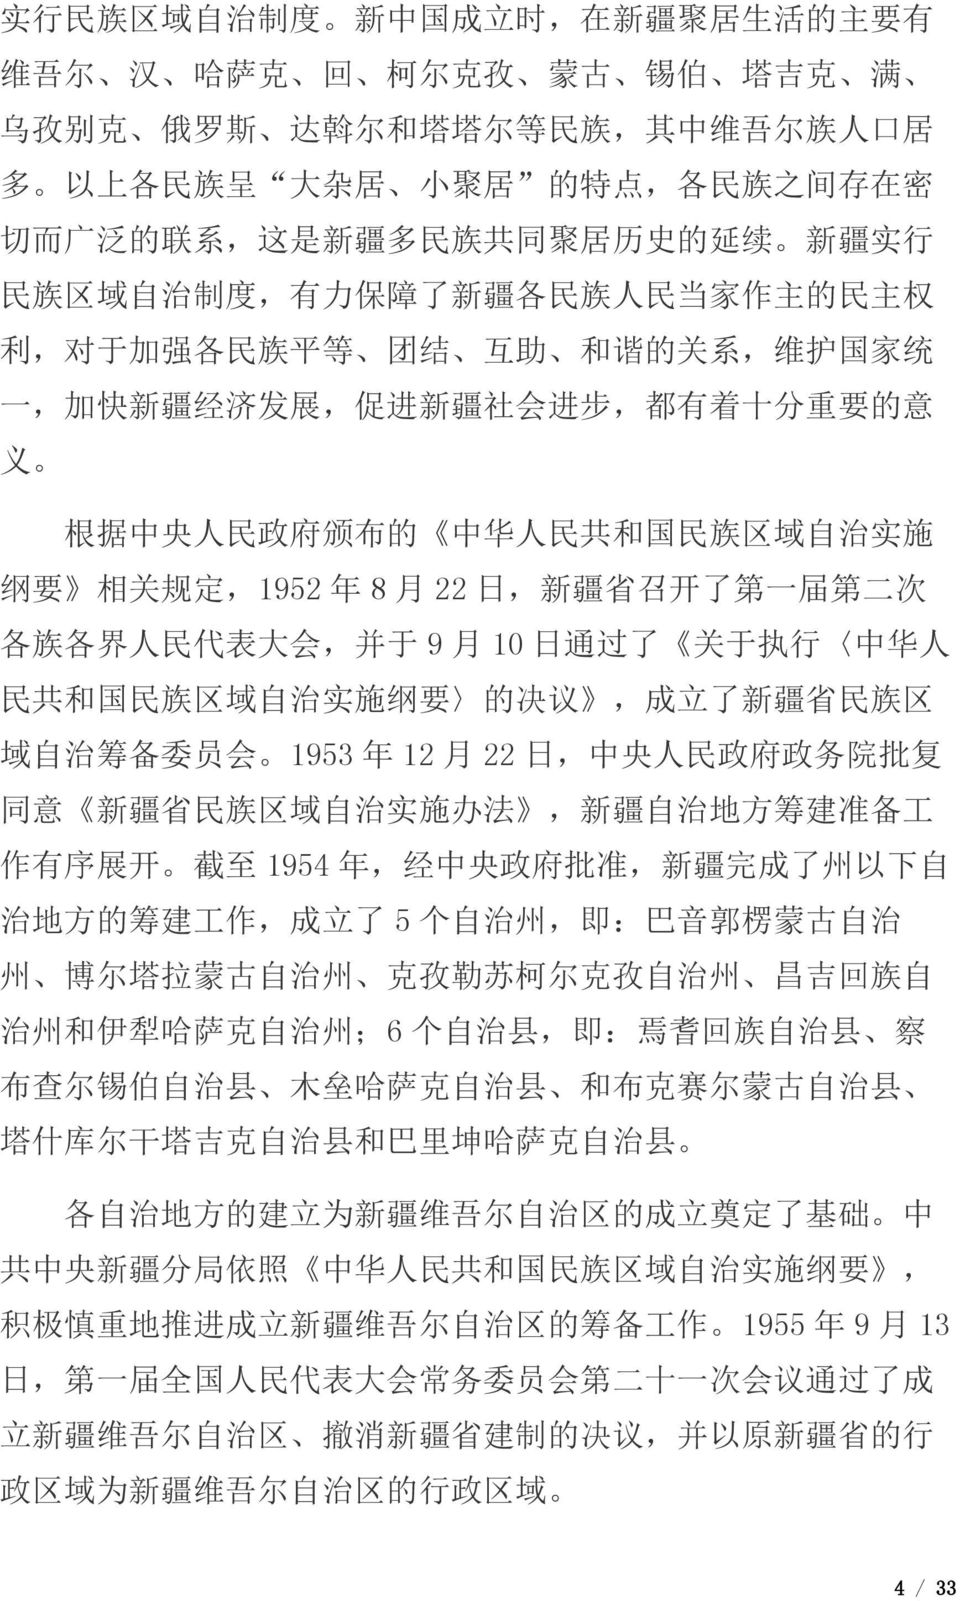 有 着 十 分 重 要 的 意 义 根 据 中 央 人 民 政 府 颁 布 的 中 华 人 民 共 和 国 民 族 区 域 自 治 实 施 纲 要 相 关 规 定,1952 年 8 月 22 日, 新 疆 省 召 开 了 第 一 届 第 二 次 各 族 各 界 人 民 代 表 大 会, 并 于 9 月 10 日 通 过 了 关 于 执 行 中 华 人 民 共 和 国 民 族 区 域 自 治 实